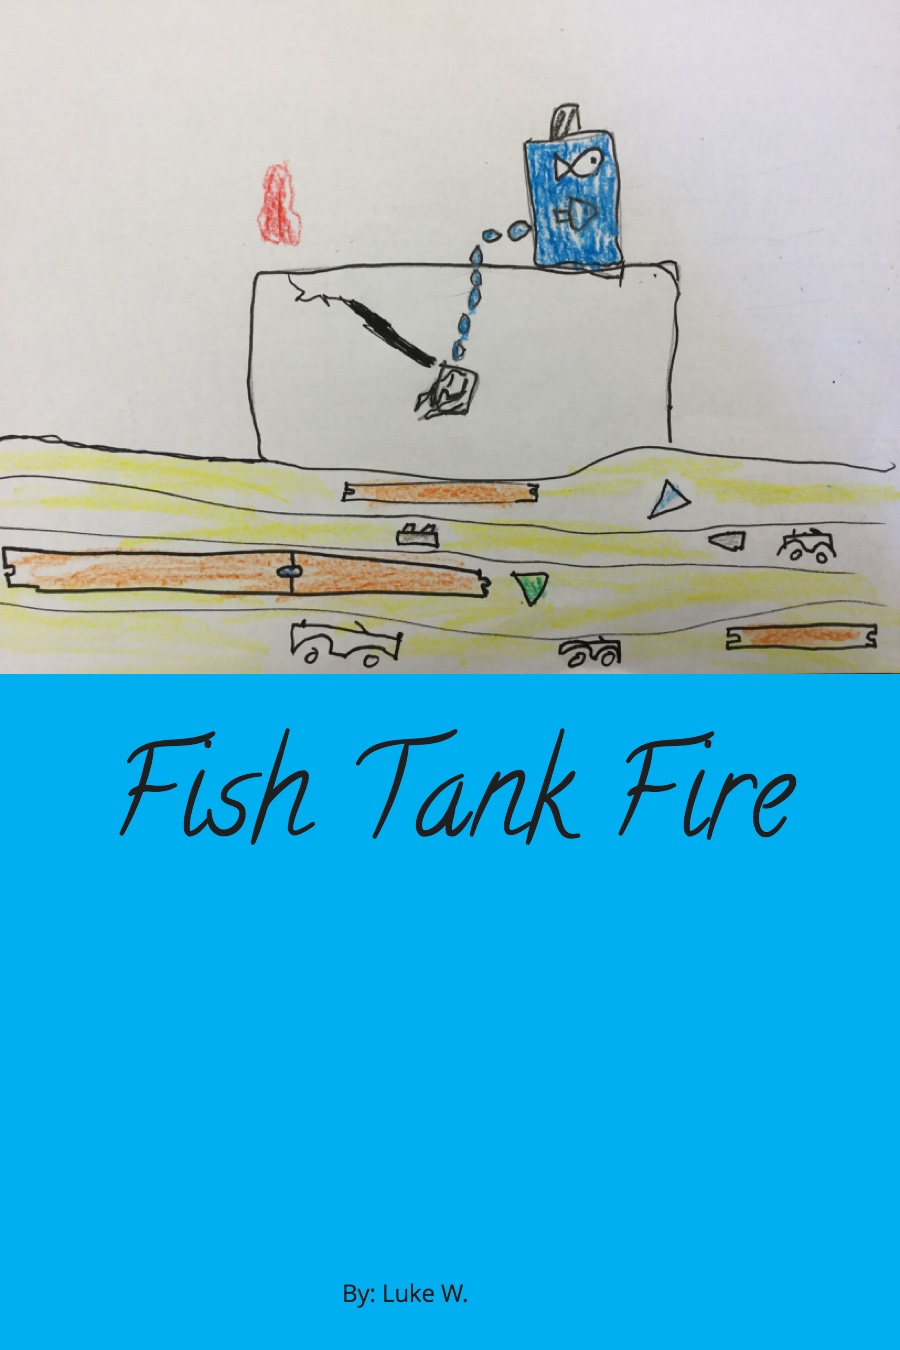 Fish Tank Fire